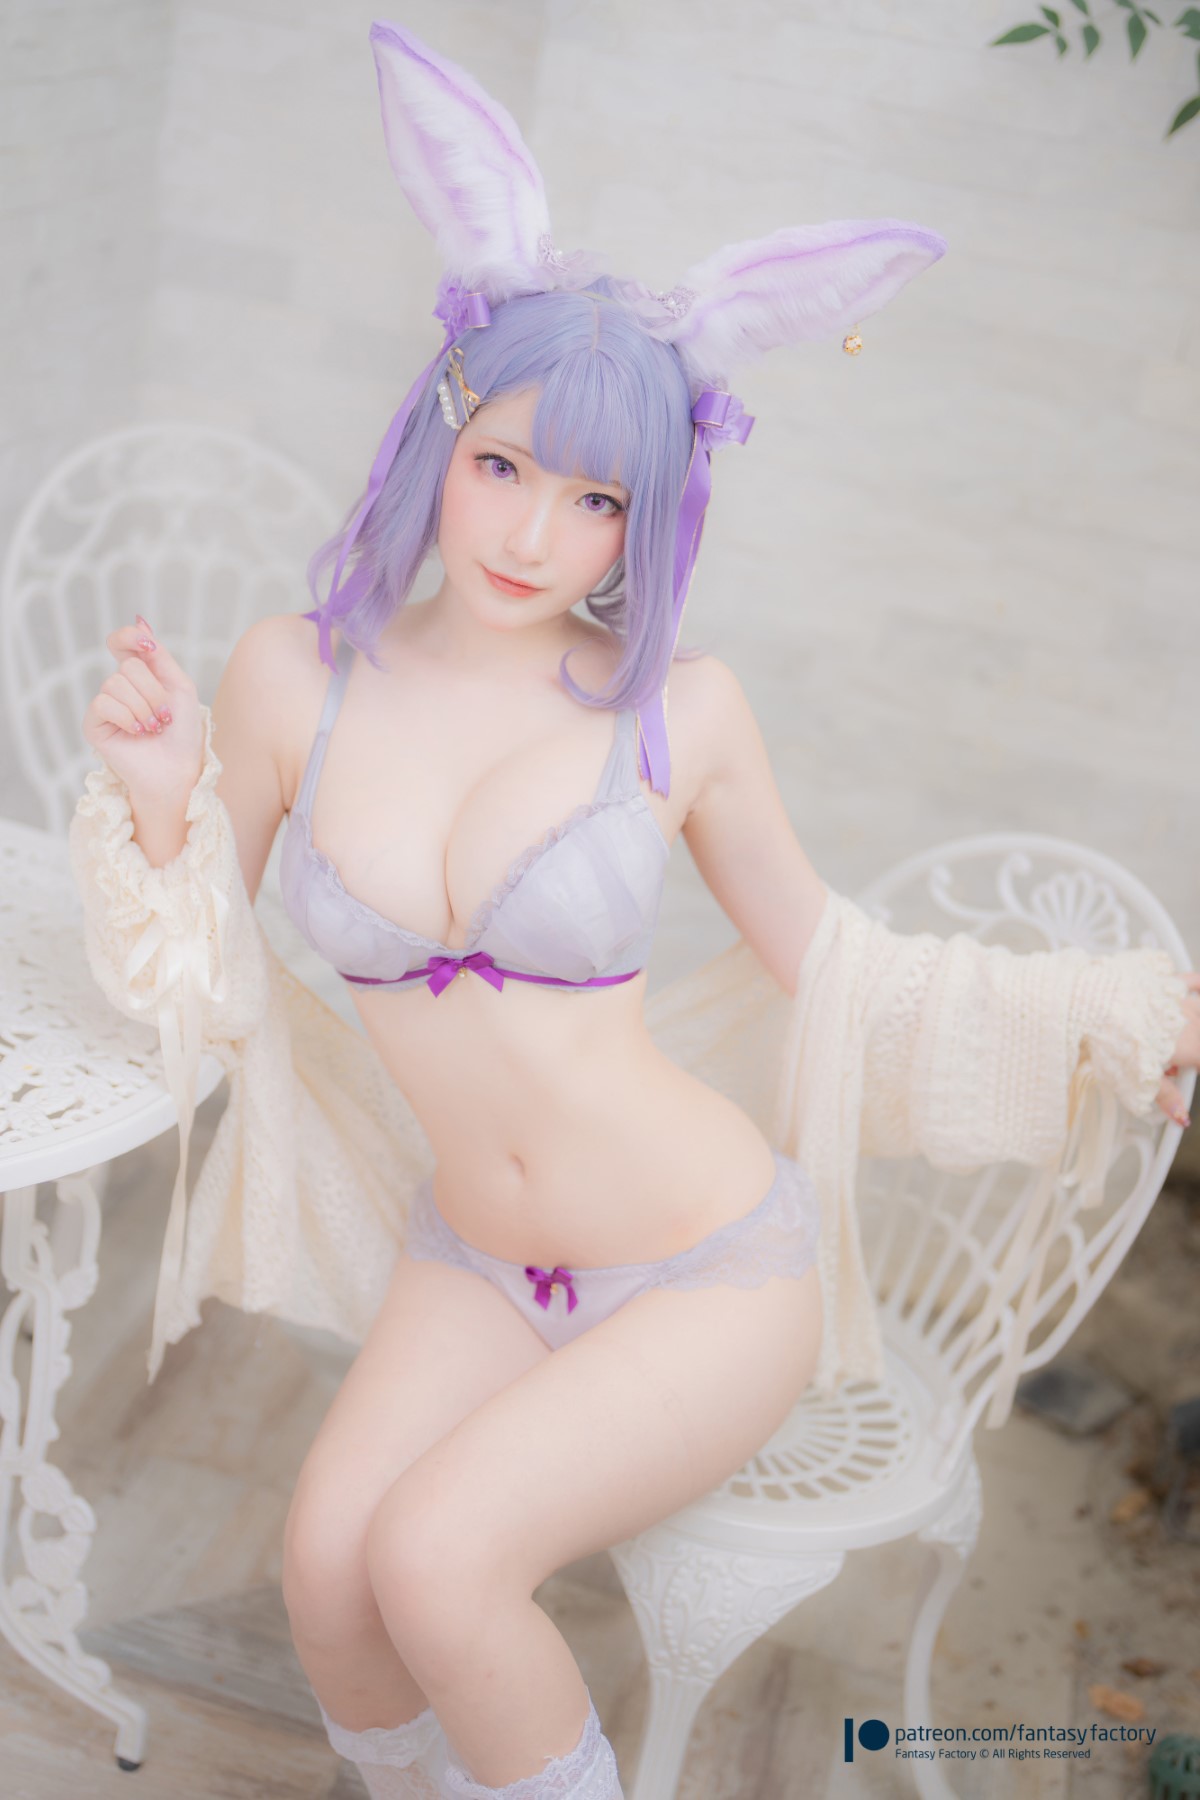 Coser@Fantasy Factory 小丁 Purple Bunny 0010 5200391864.jpg